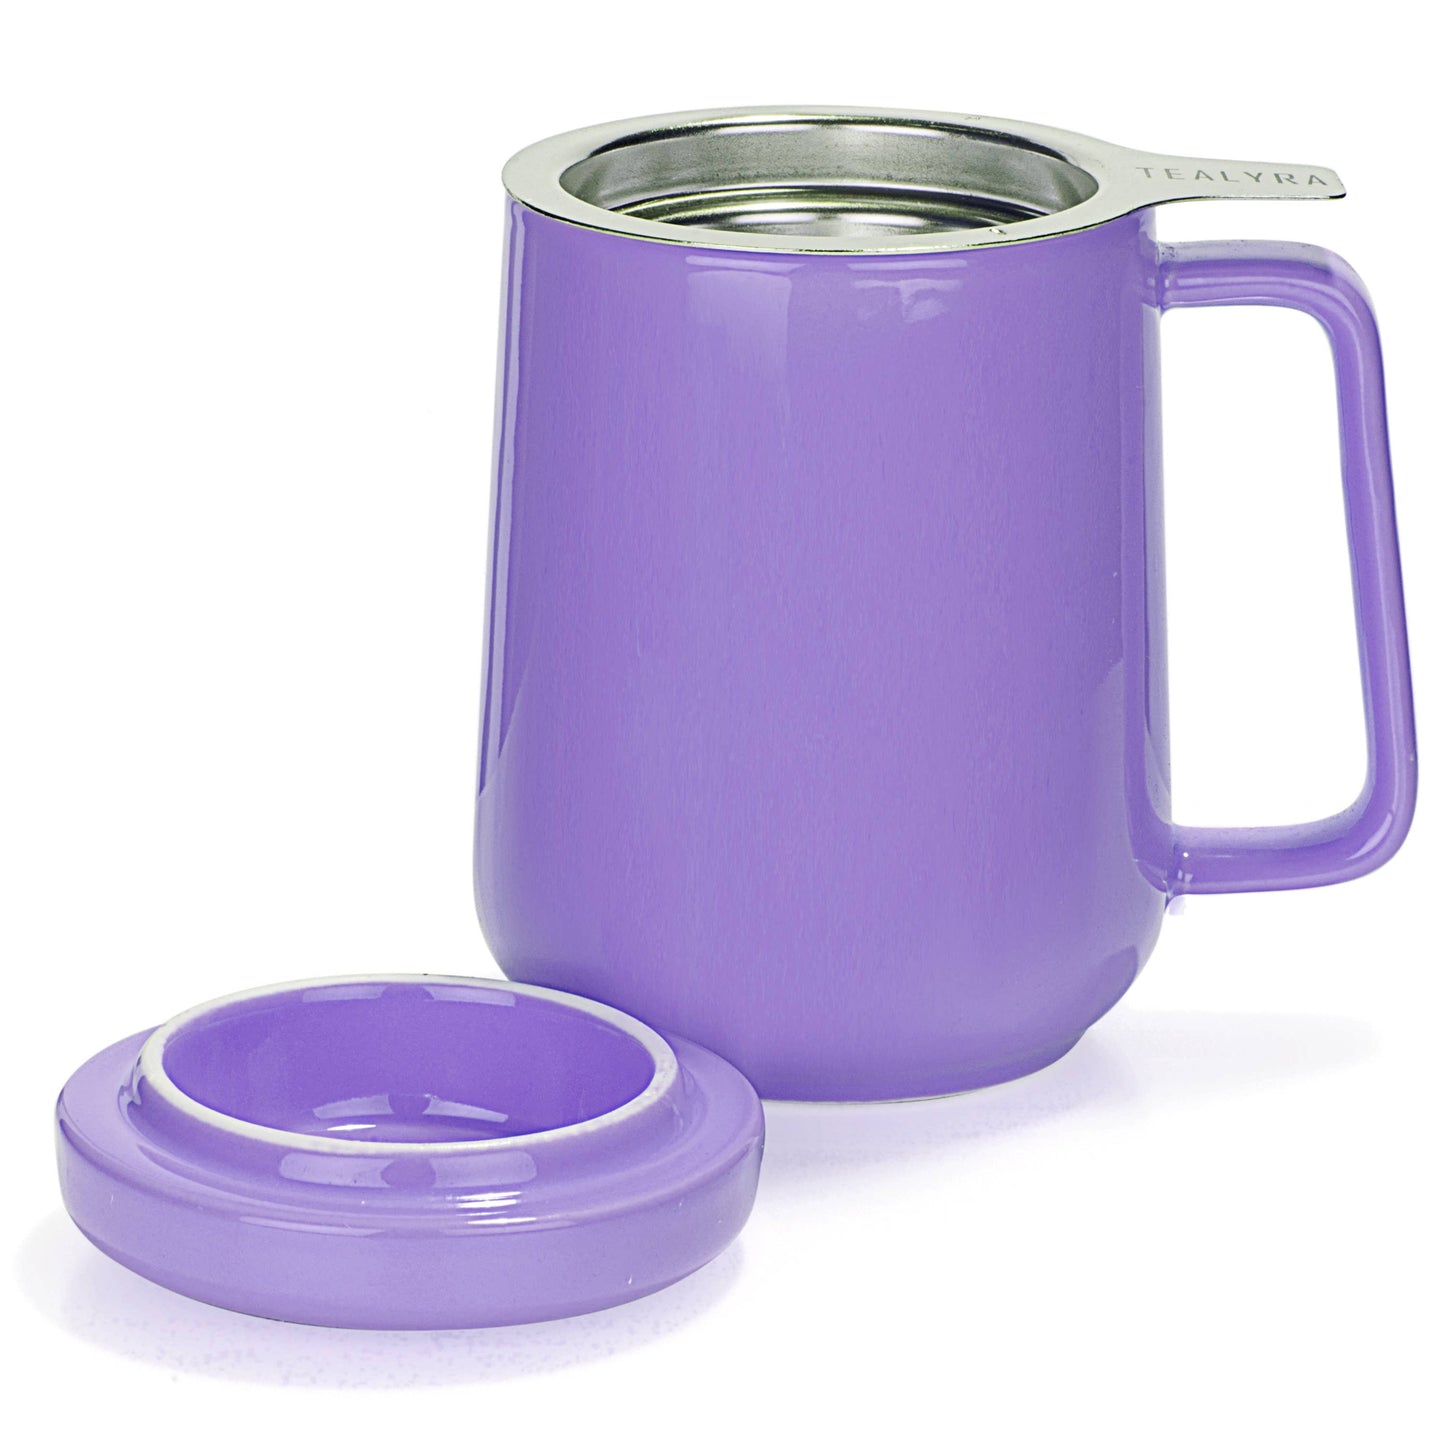 Peak Porcelain Mug With Infuser 19oz, Purple Matte Finish